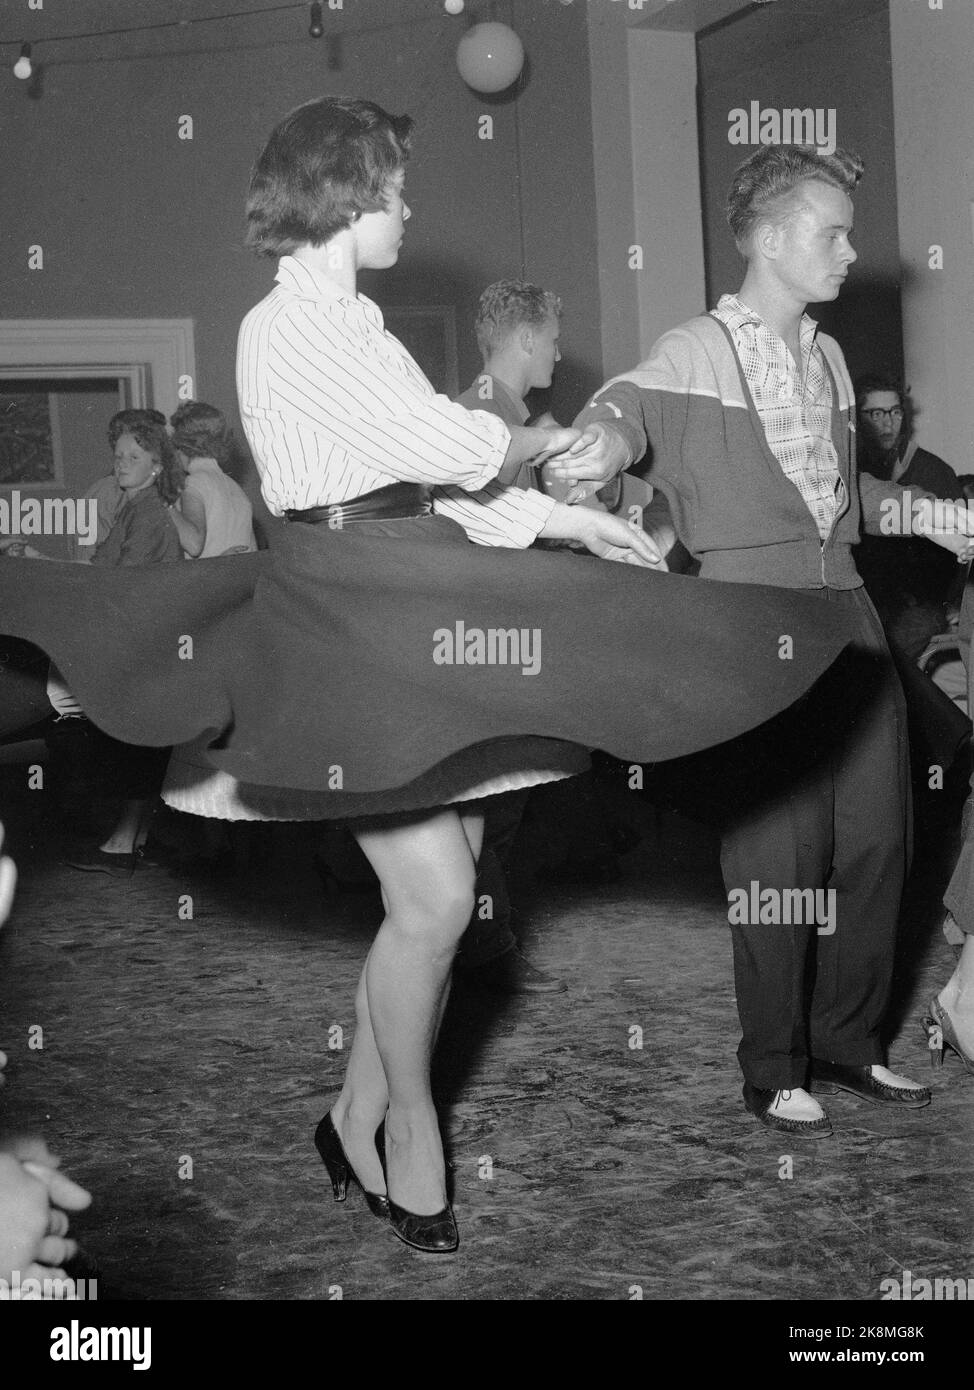 Oslo 19570905: Rock'n roll avec danse au club de loisirs de Hammersborg. Balançoire et rock dansant pour les jeunes dans des vêtements typiques. Photo: NTB / NTB Banque D'Images